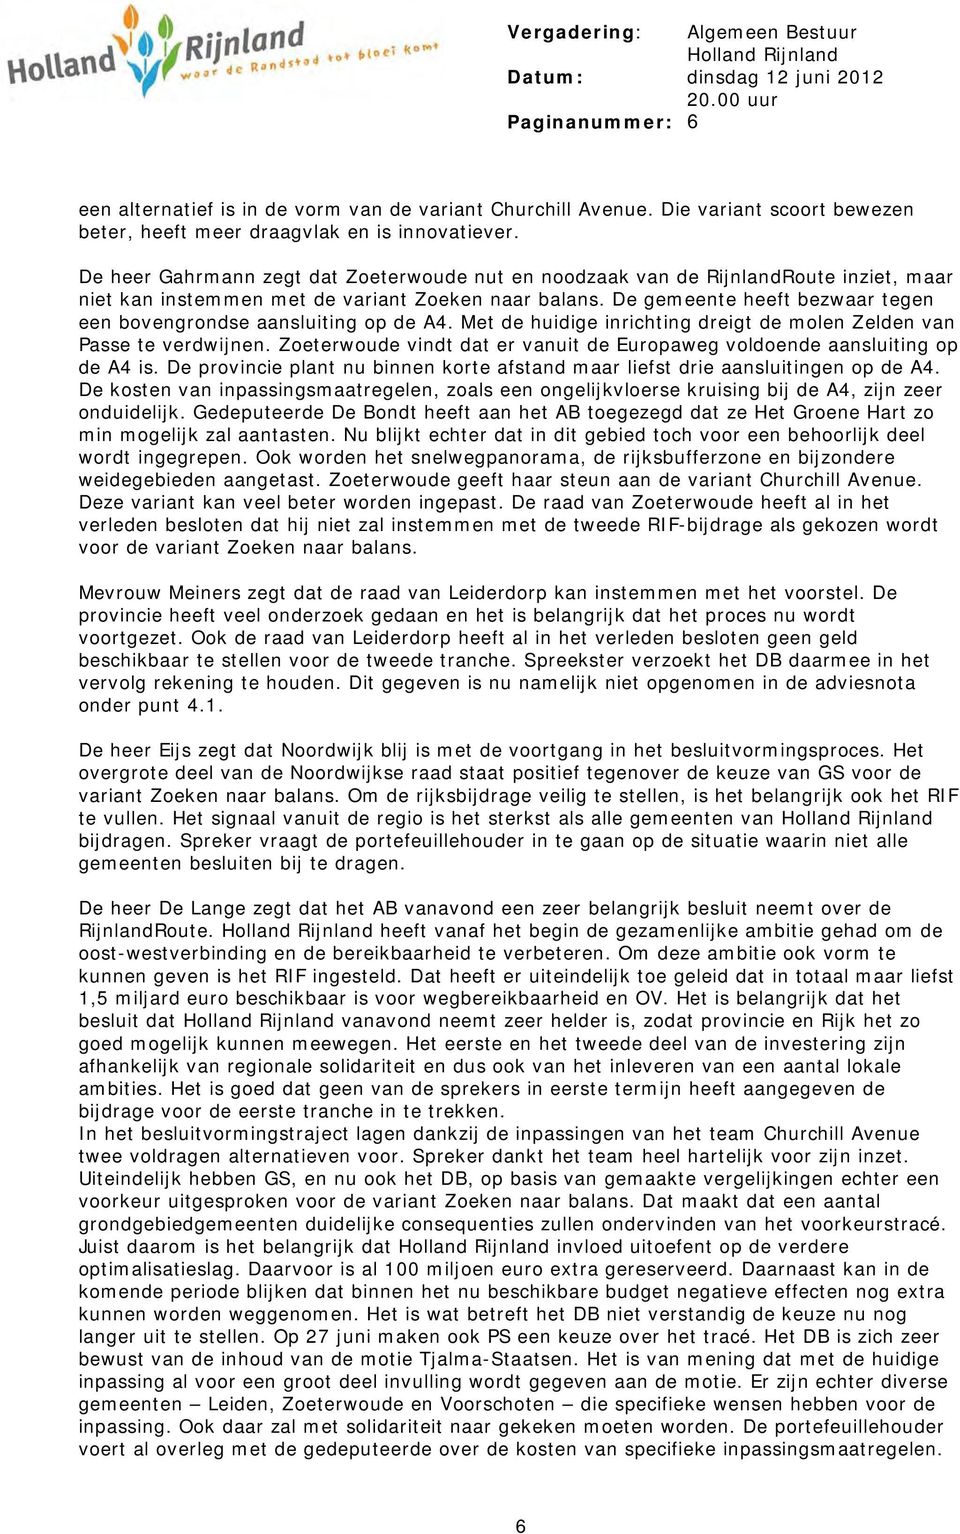 De heer Gahrmann zegt dat Zoeterwoude nut en noodzaak van de RijnlandRoute inziet, maar niet kan instemmen met de variant Zoeken naar balans.